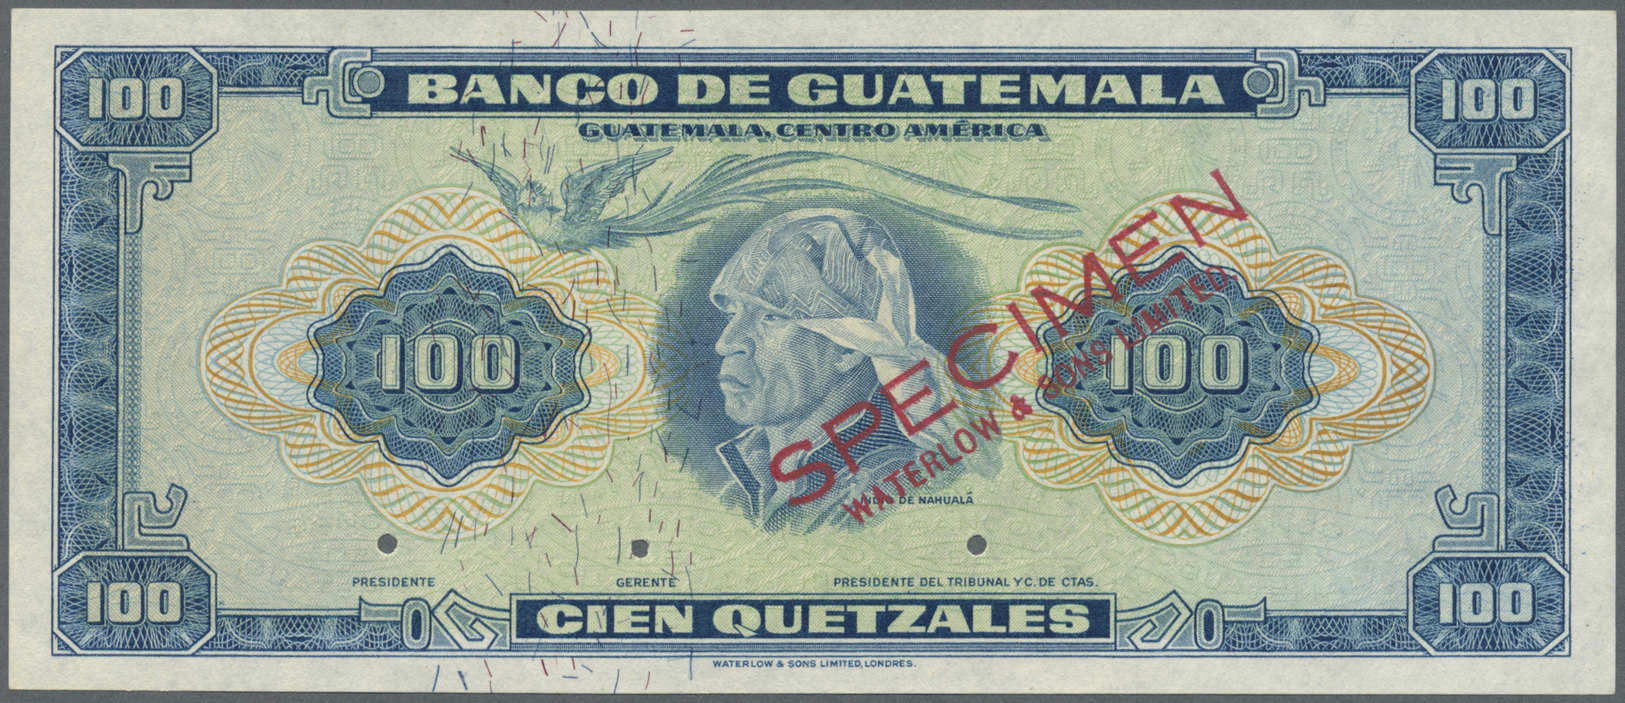 00965 Guatemala: Banco De Guatemala 100 Quetzales 1959-65 SPECIMEN By Waterlow & Sons Ltd., P.49s In Perfect UNC Conditi - Guatemala